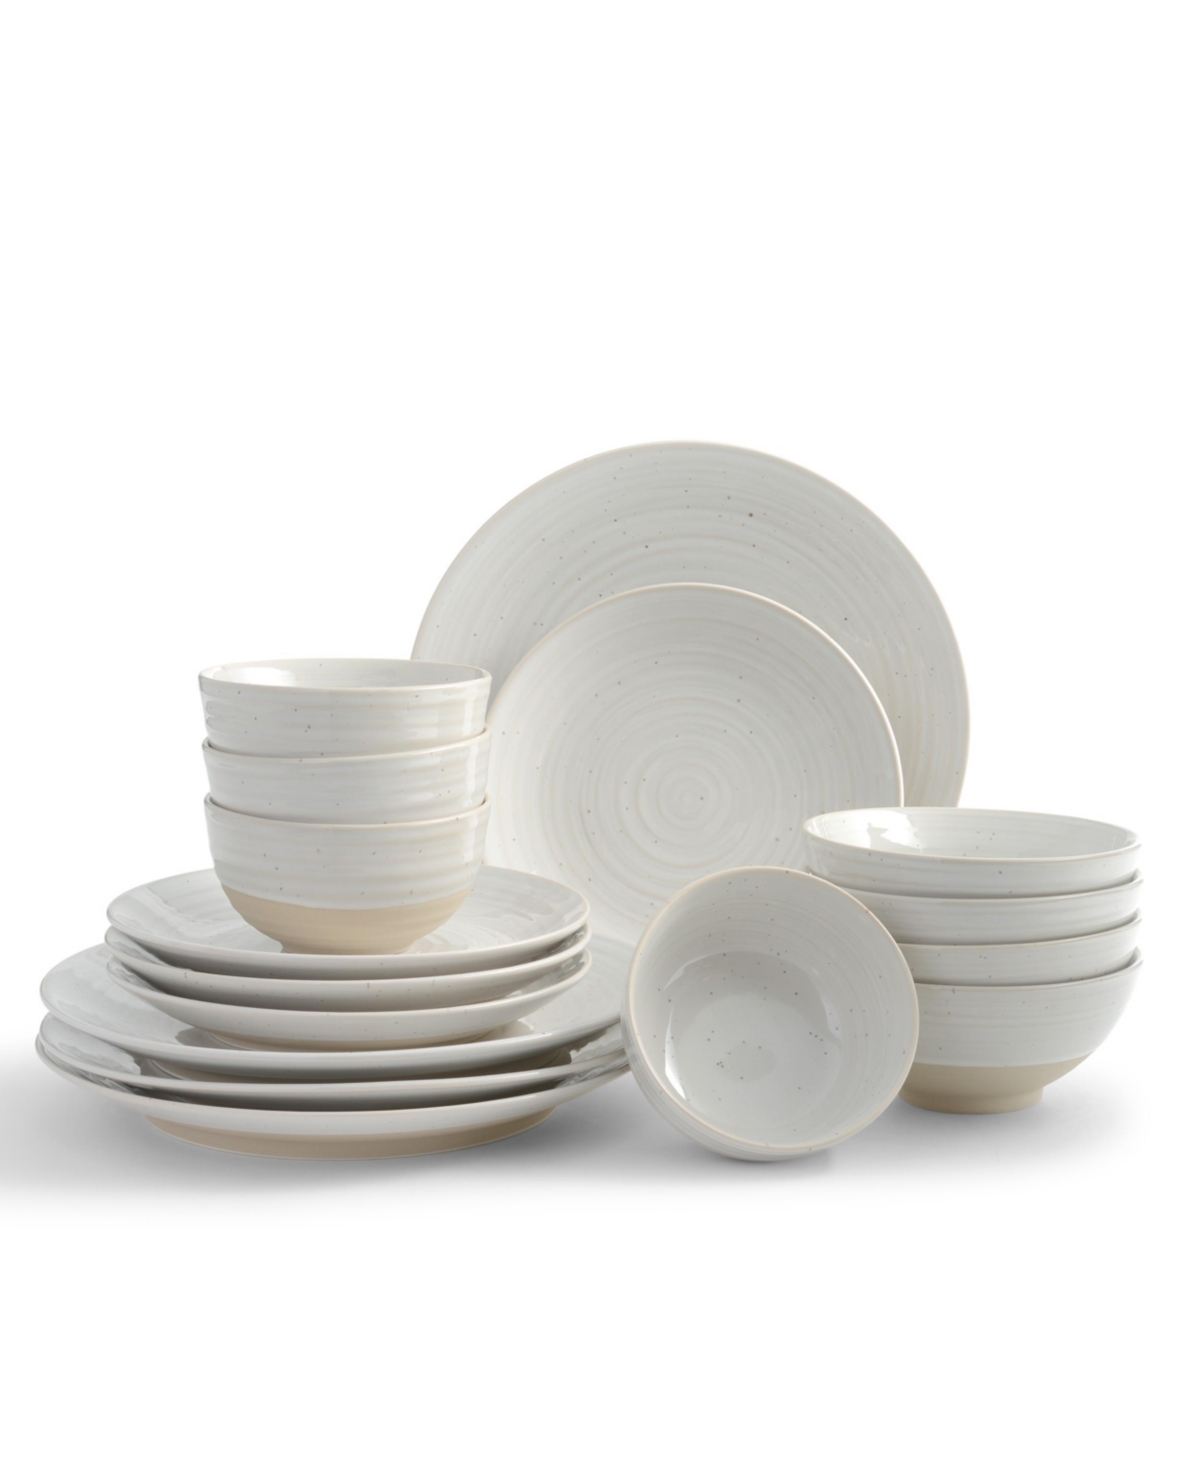 Siterra Round 16 Piece Dinnerware Set, Service for 4 - White